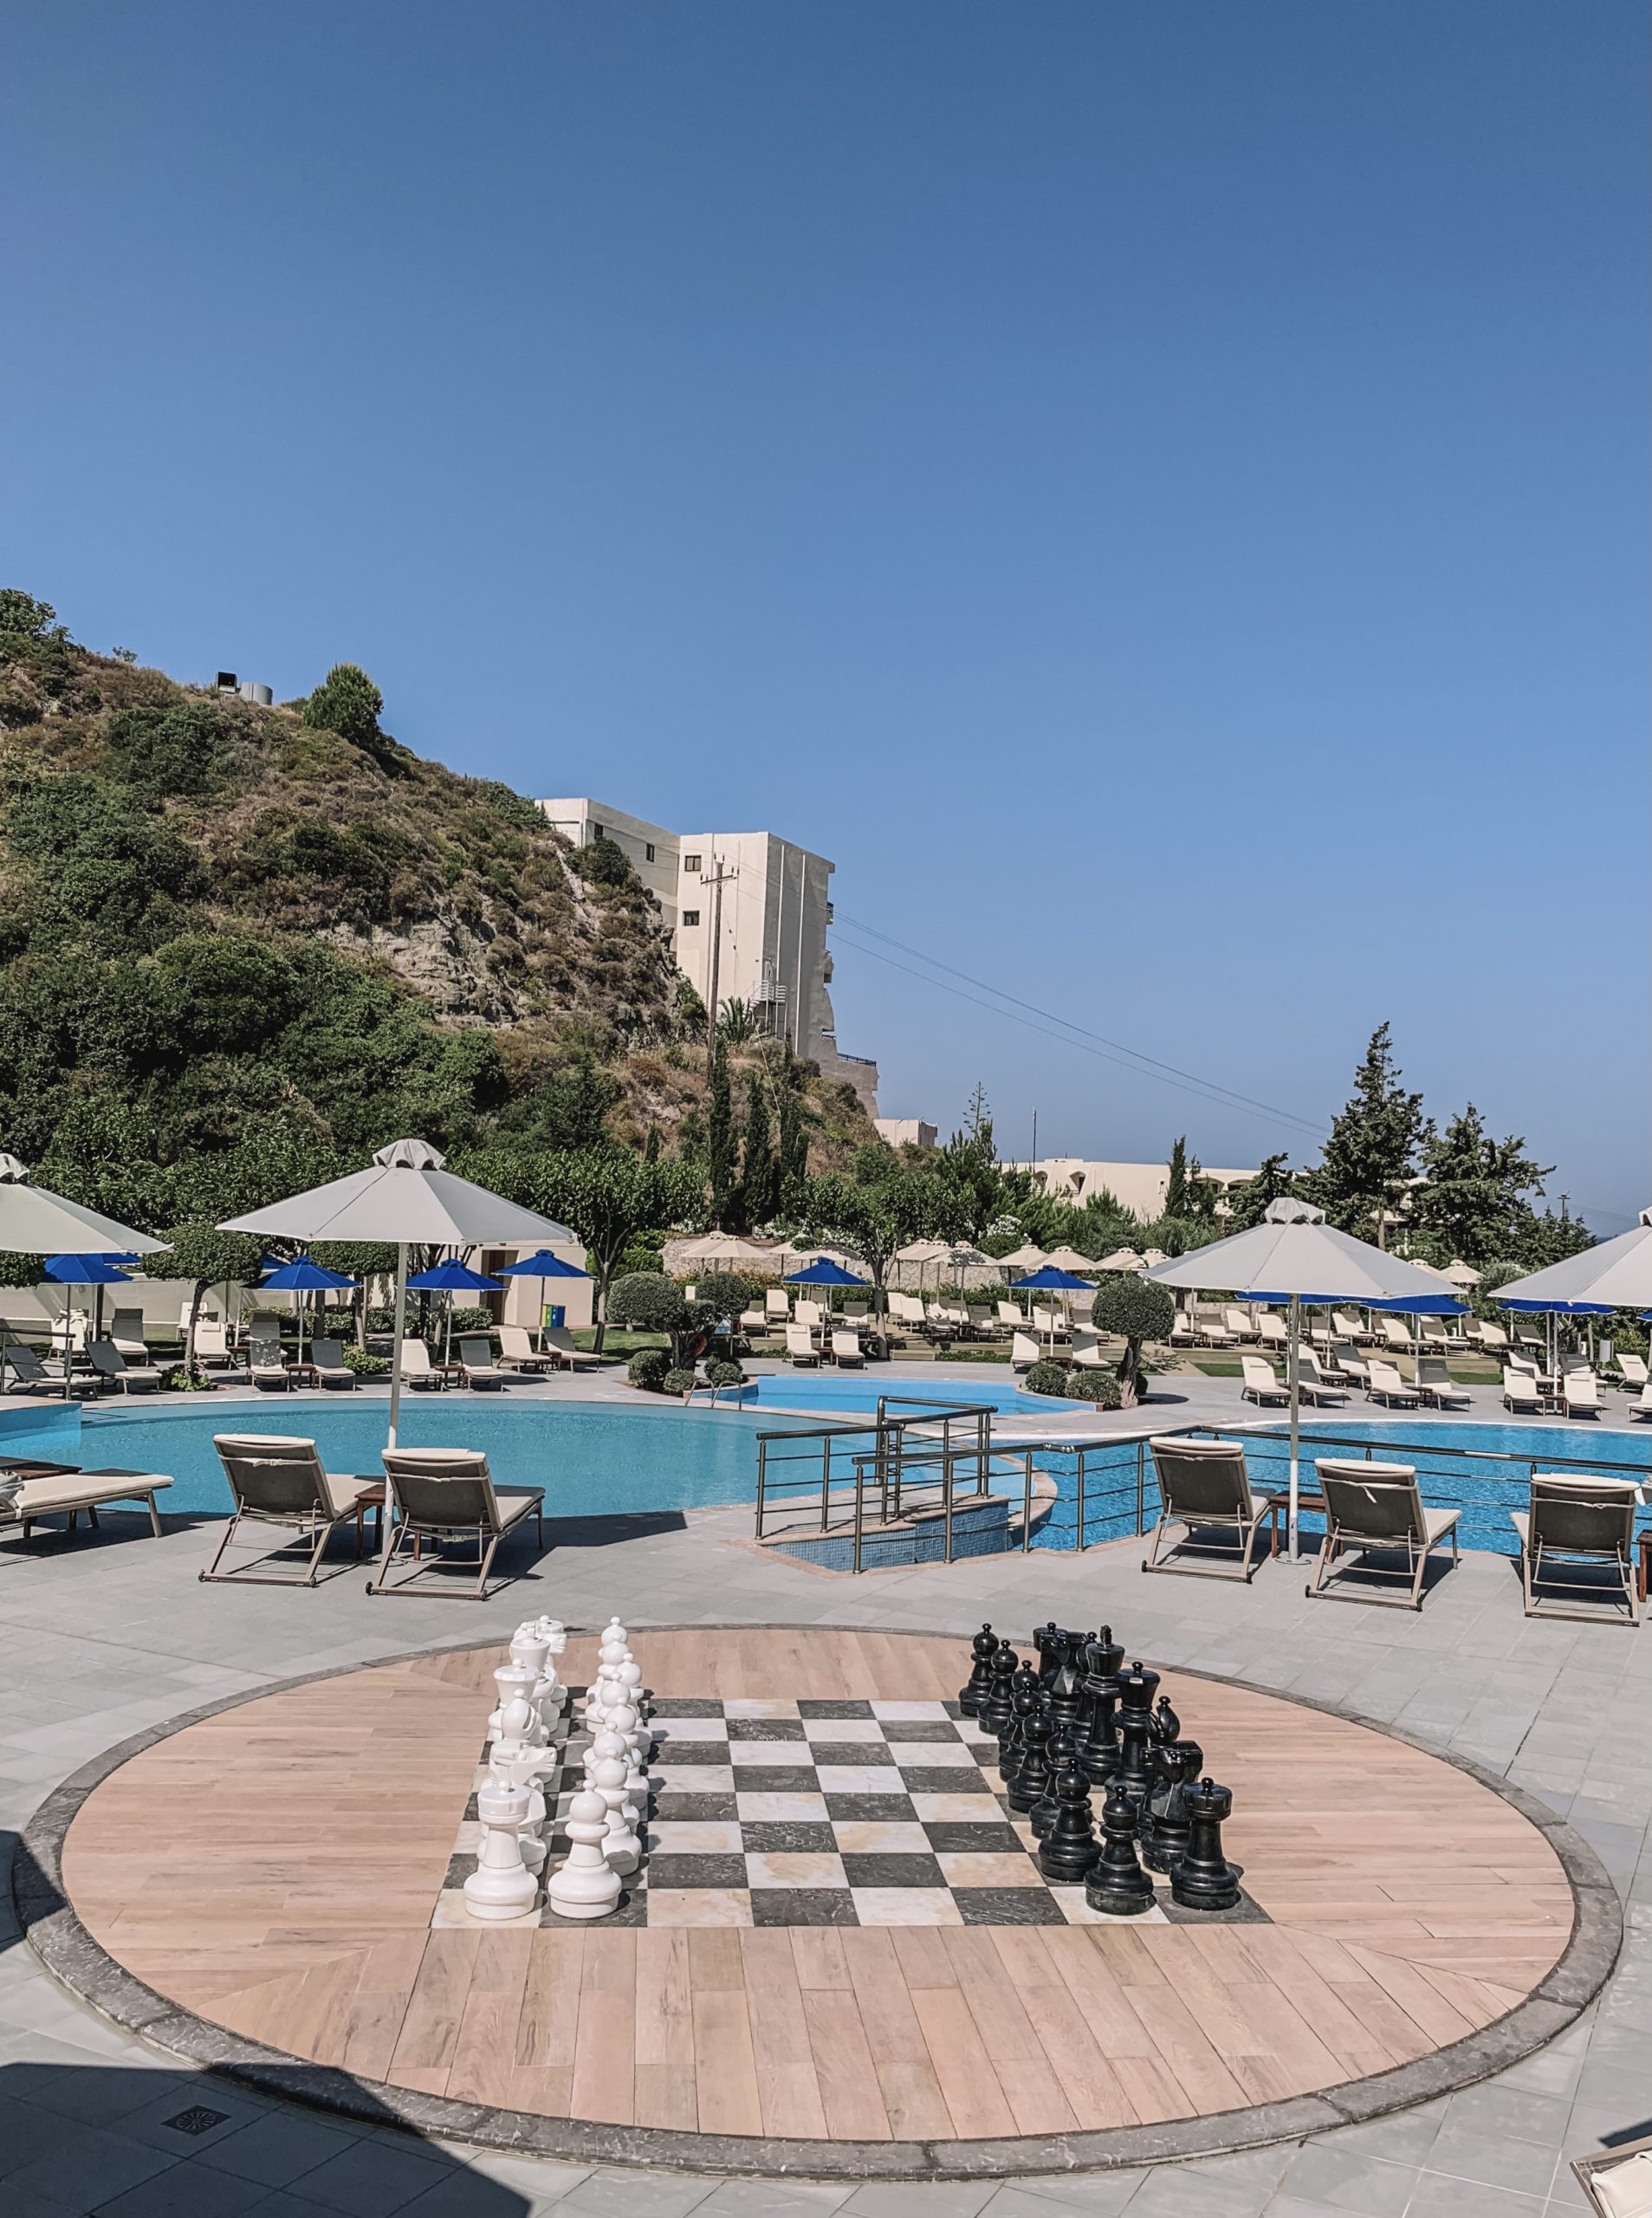 Holiday in Rhodes, Greece. Atrium Hotels. Atrium Platinum Resort Hotel & Spa. Best Hotels in Rhodes